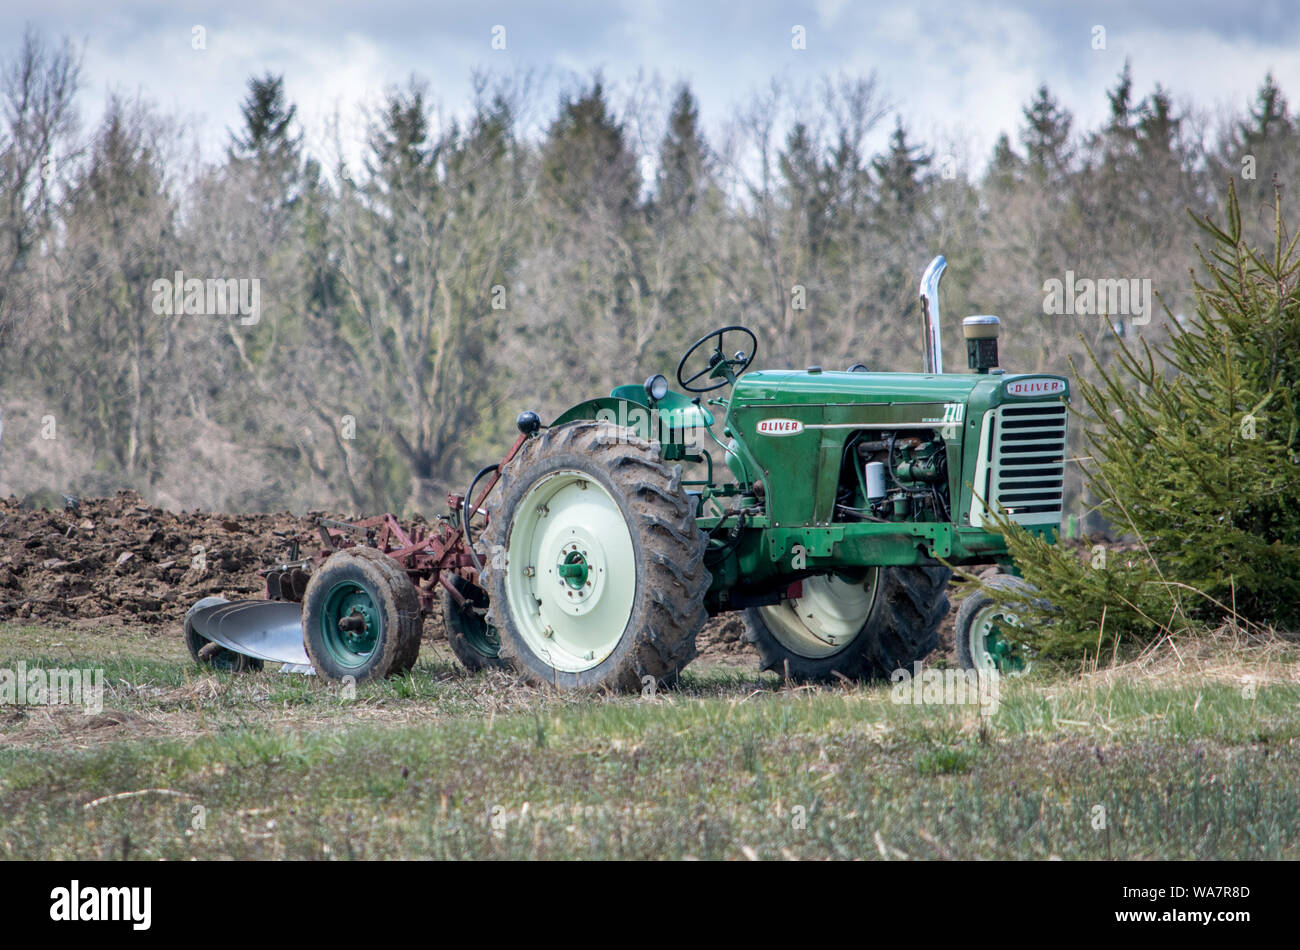 april 28 2018 Buchanan MI USA; tractor on display Stock Photo